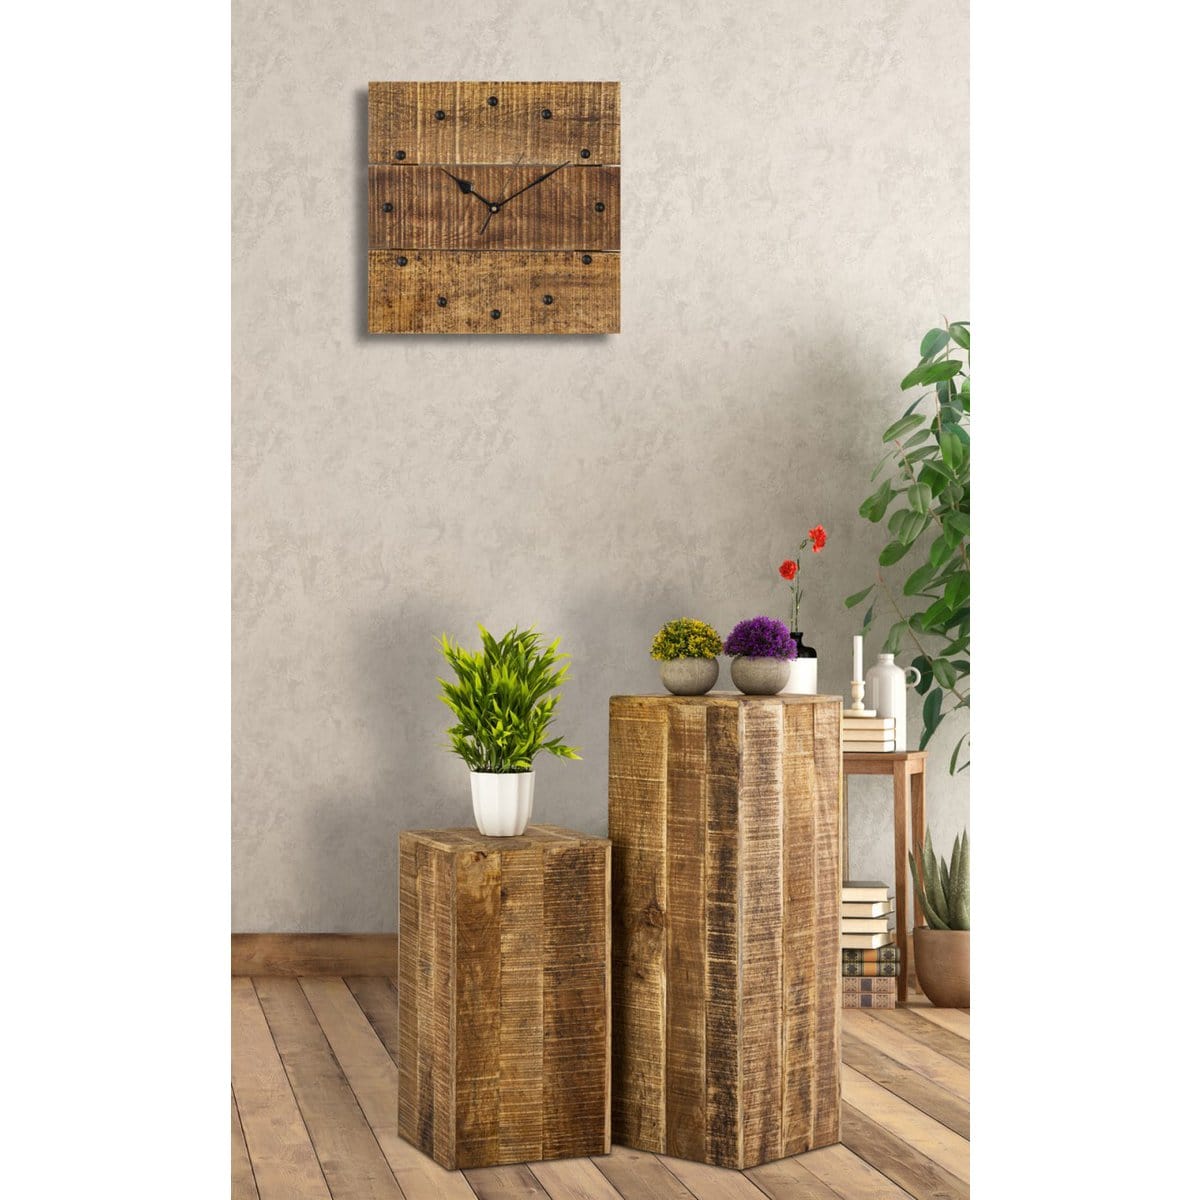 Voglrieder kreatives Wohnen Wandklok houten klok 30x30cm wandklok hout woonkamer geruisloos vierkant gemaakt van mangohout